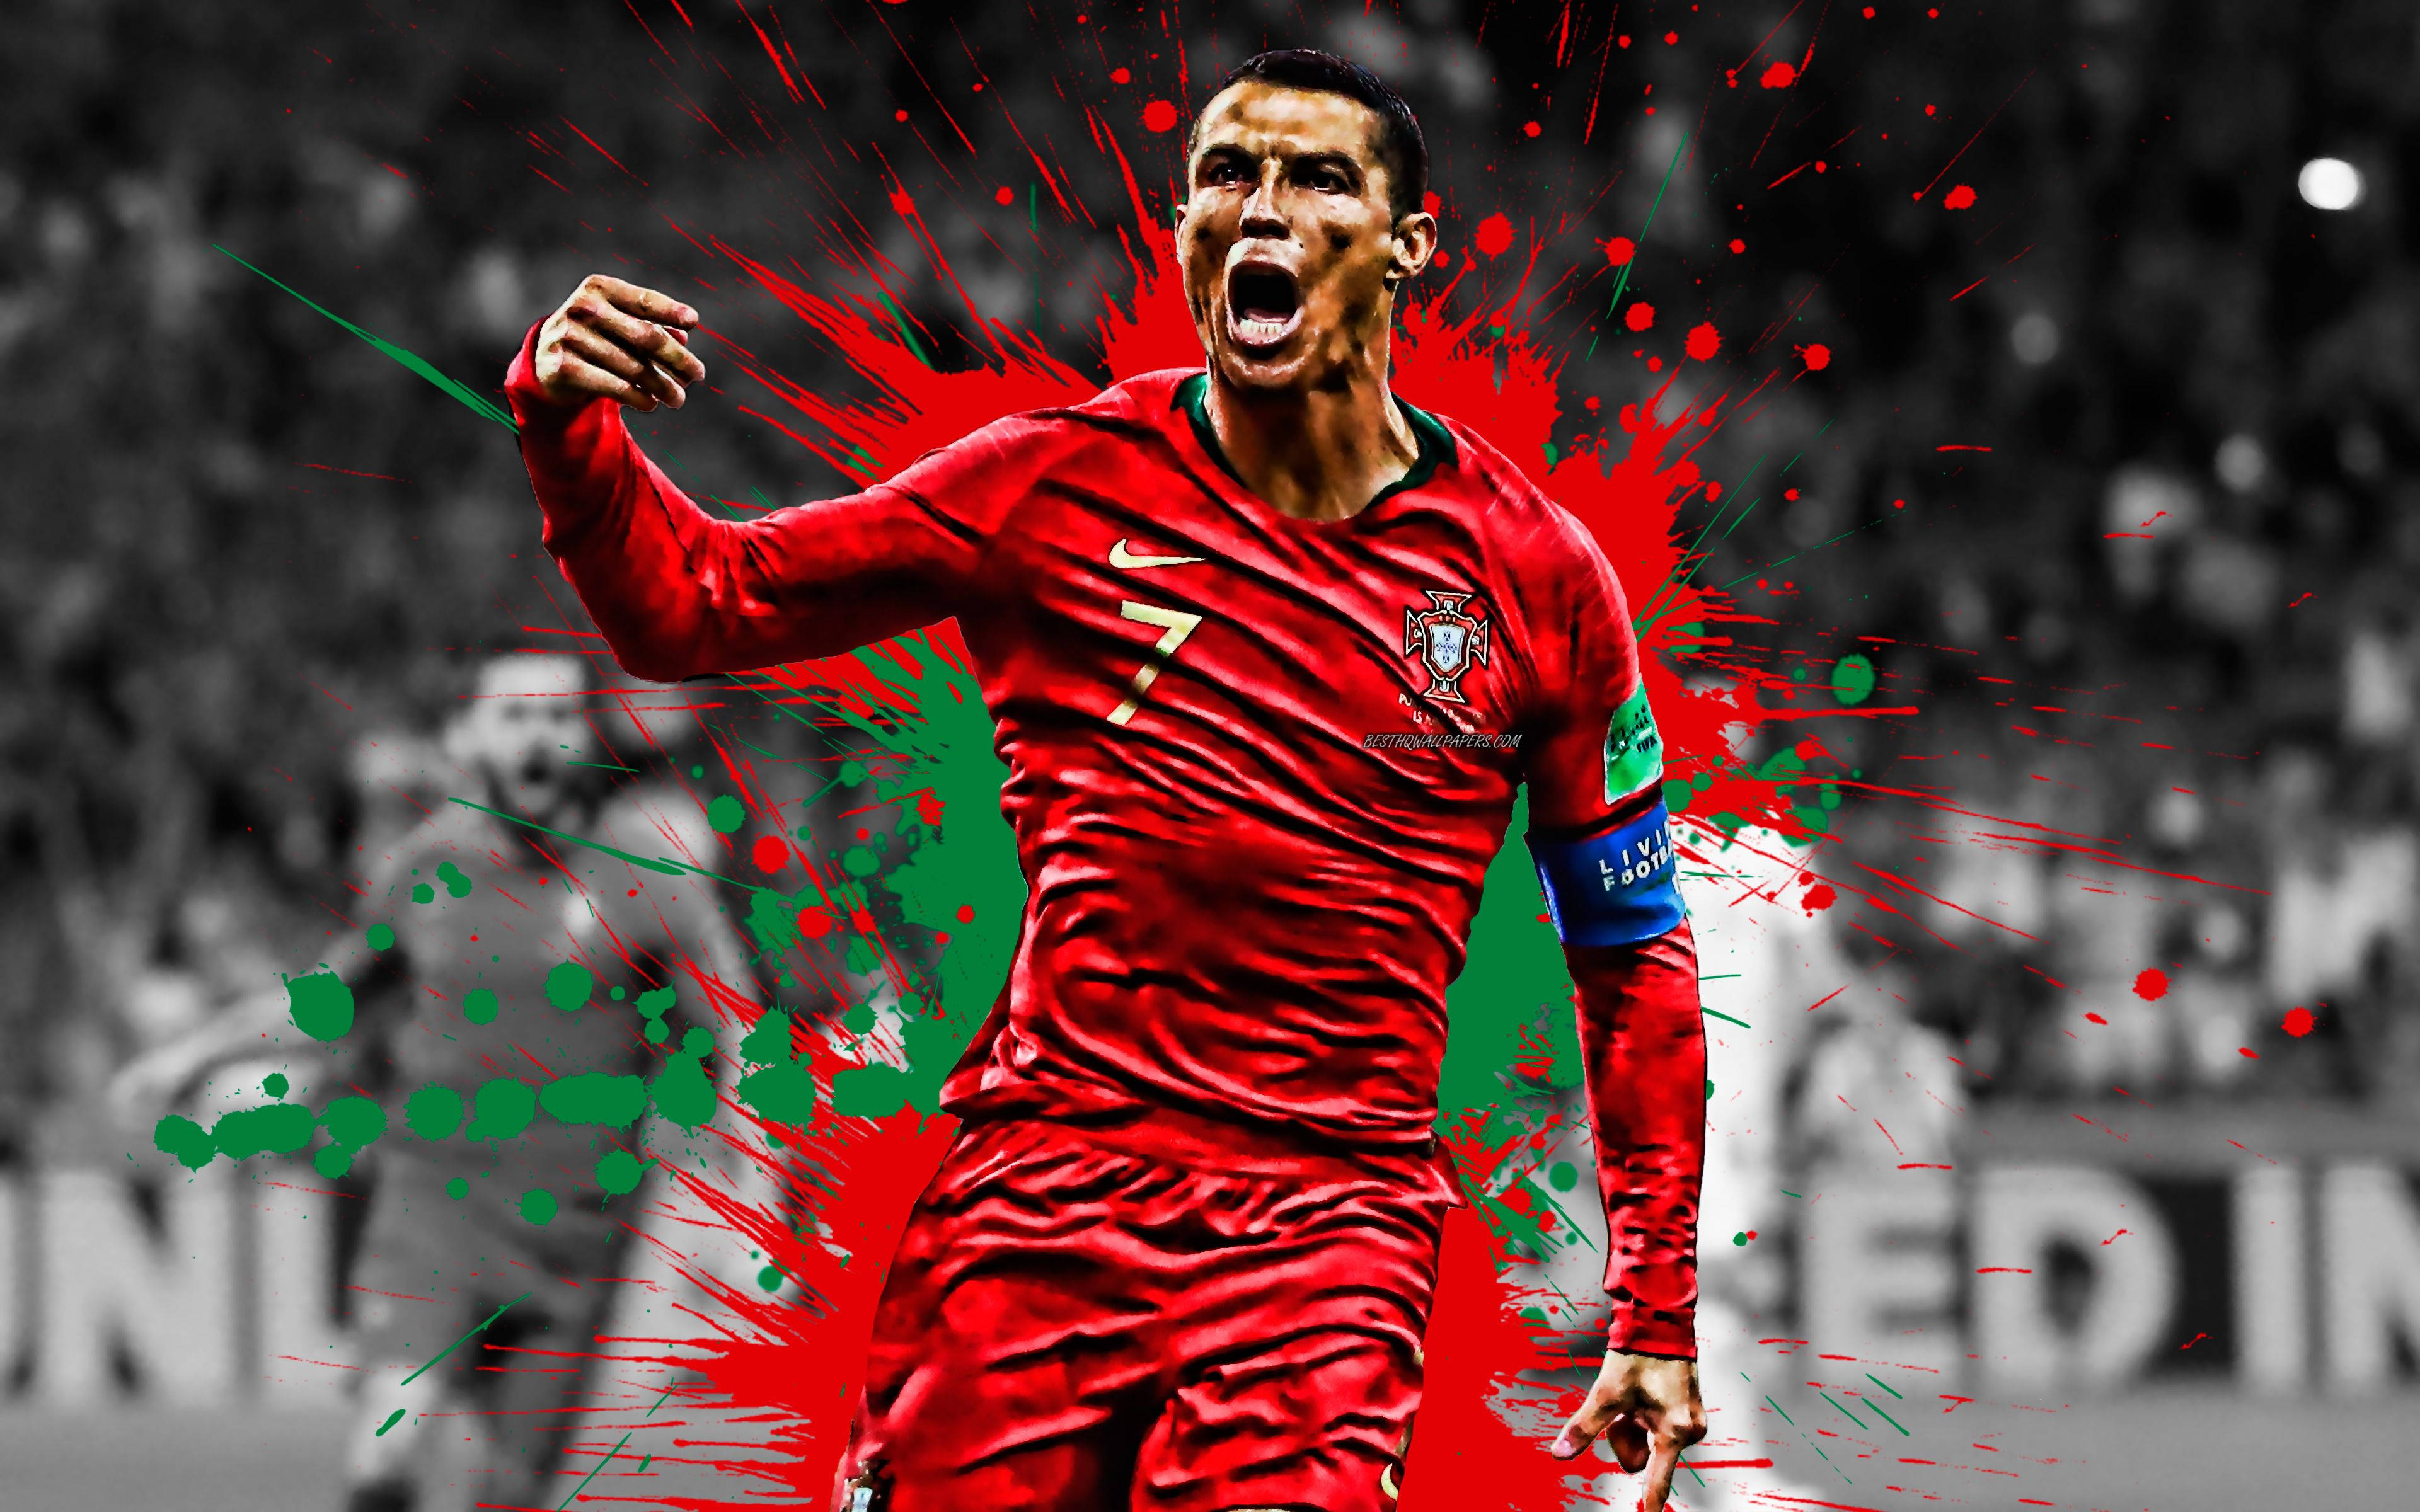 Cristiano Ronaldo Cool Red And Green Design Wallpaper